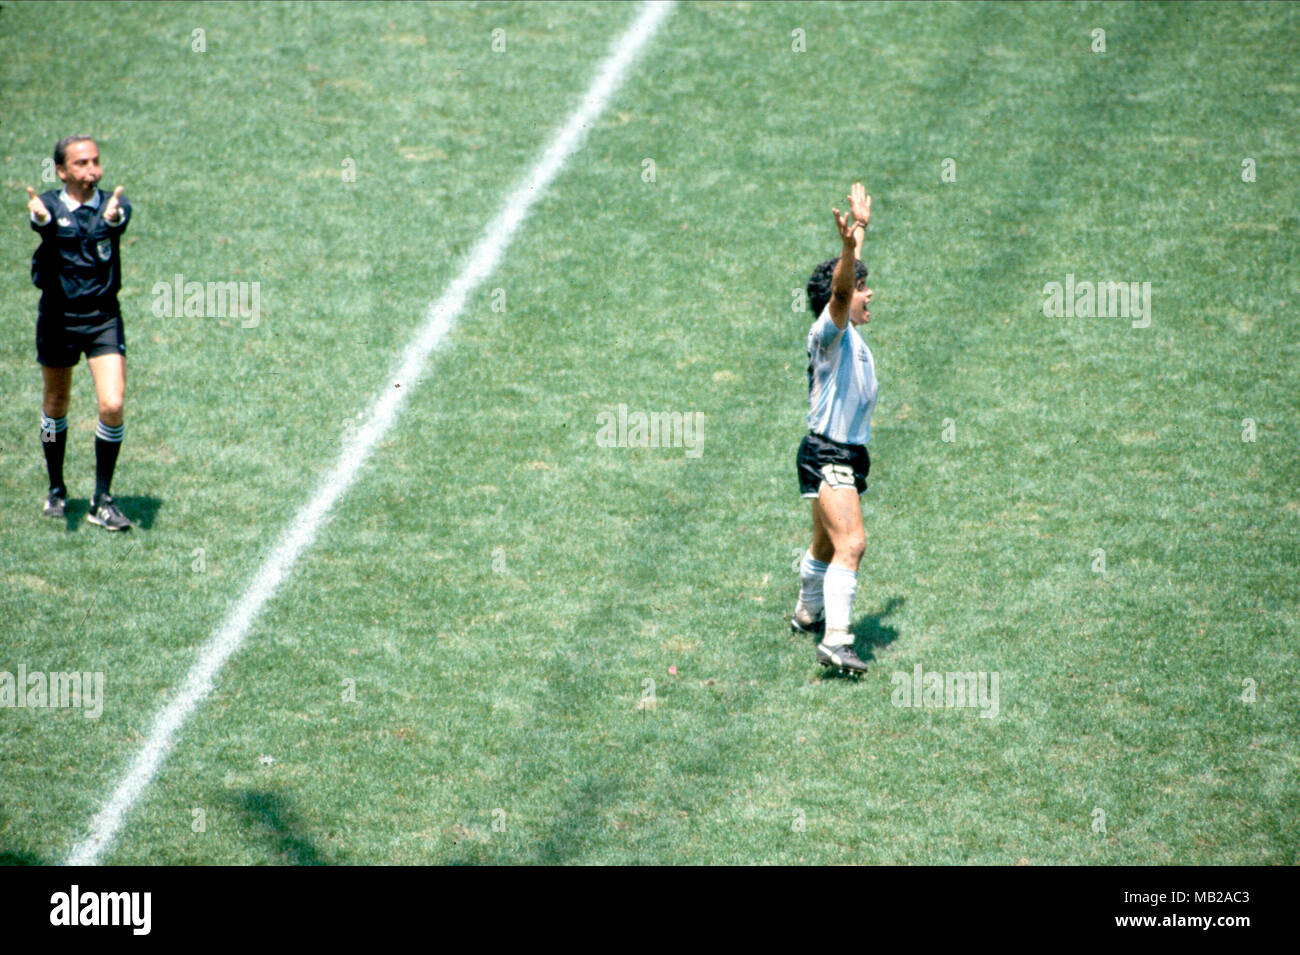 Coppa del Mondo FIFA - Messico 1986 29.6.1986, Estadio Azteca, Messico, D.F. Argentina finale v Germania Ovest. Diego Maradona salti di gioia come l'arbitro Romualdo Arppi Filho (Brasile) soffia il fischio finale. Foto Stock